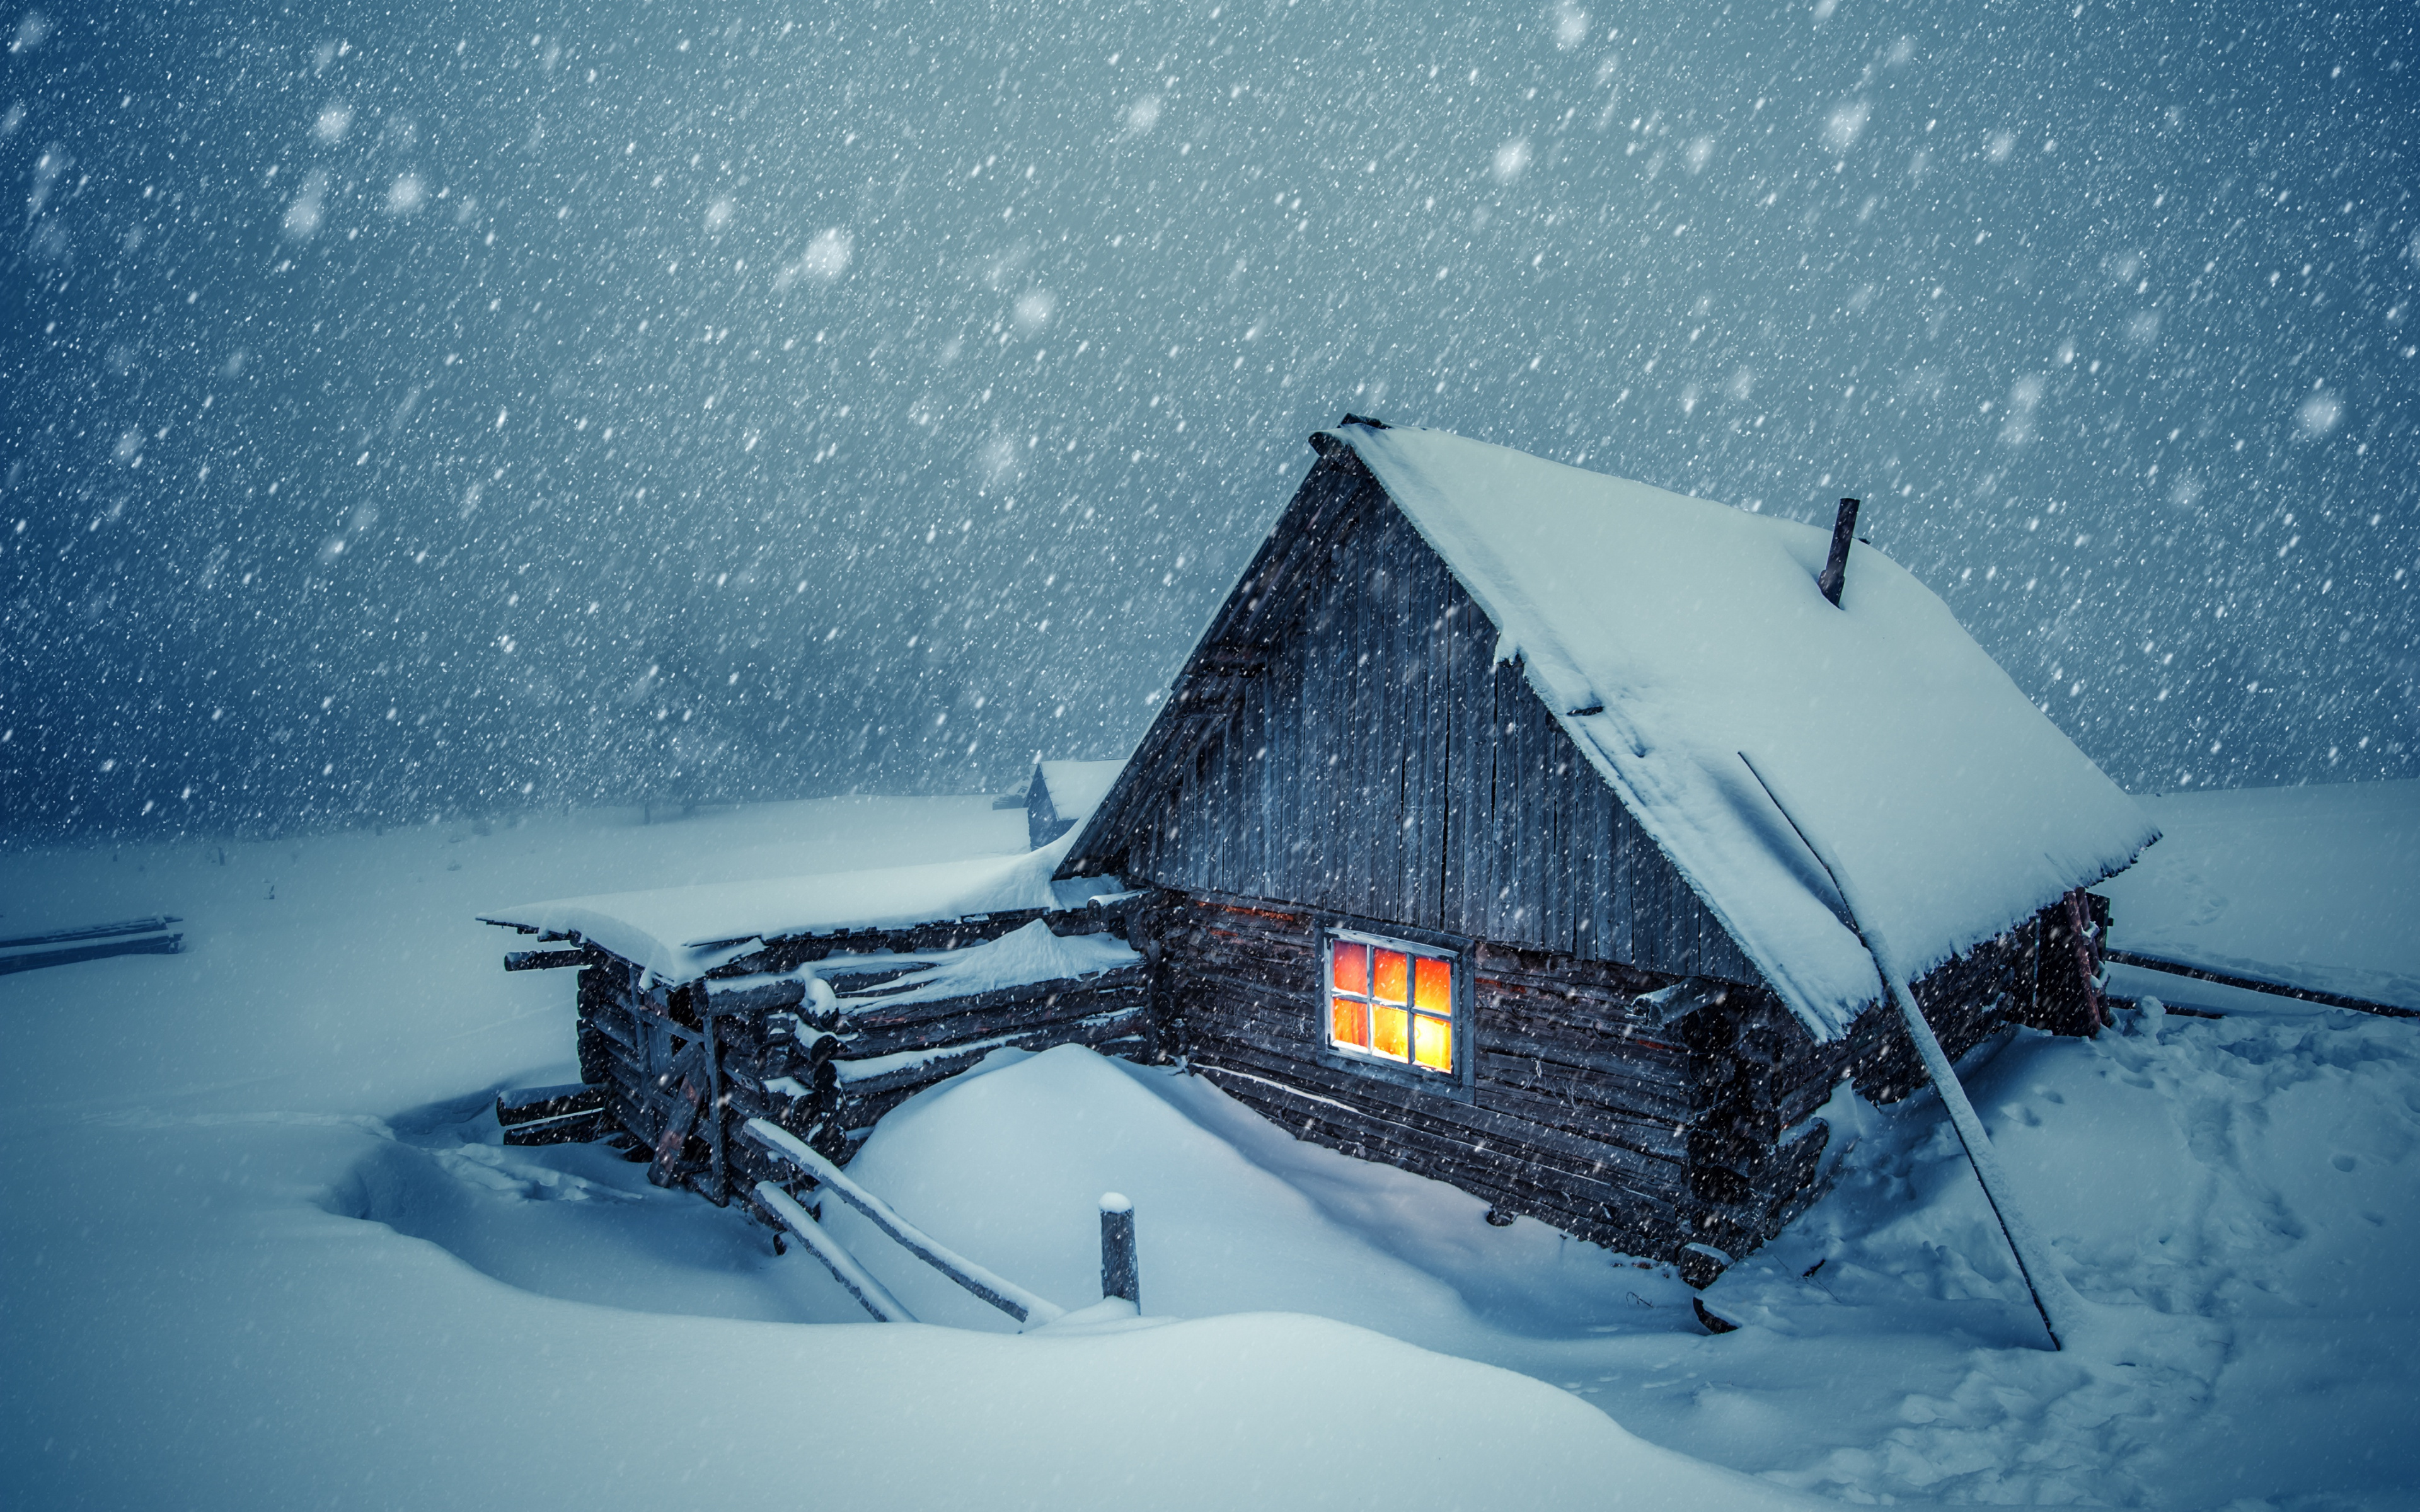 Download House Light, Winter, Snow Layer, Snowfall Wallpaper, 3840x 4K Ultra HD 16: Widescreen